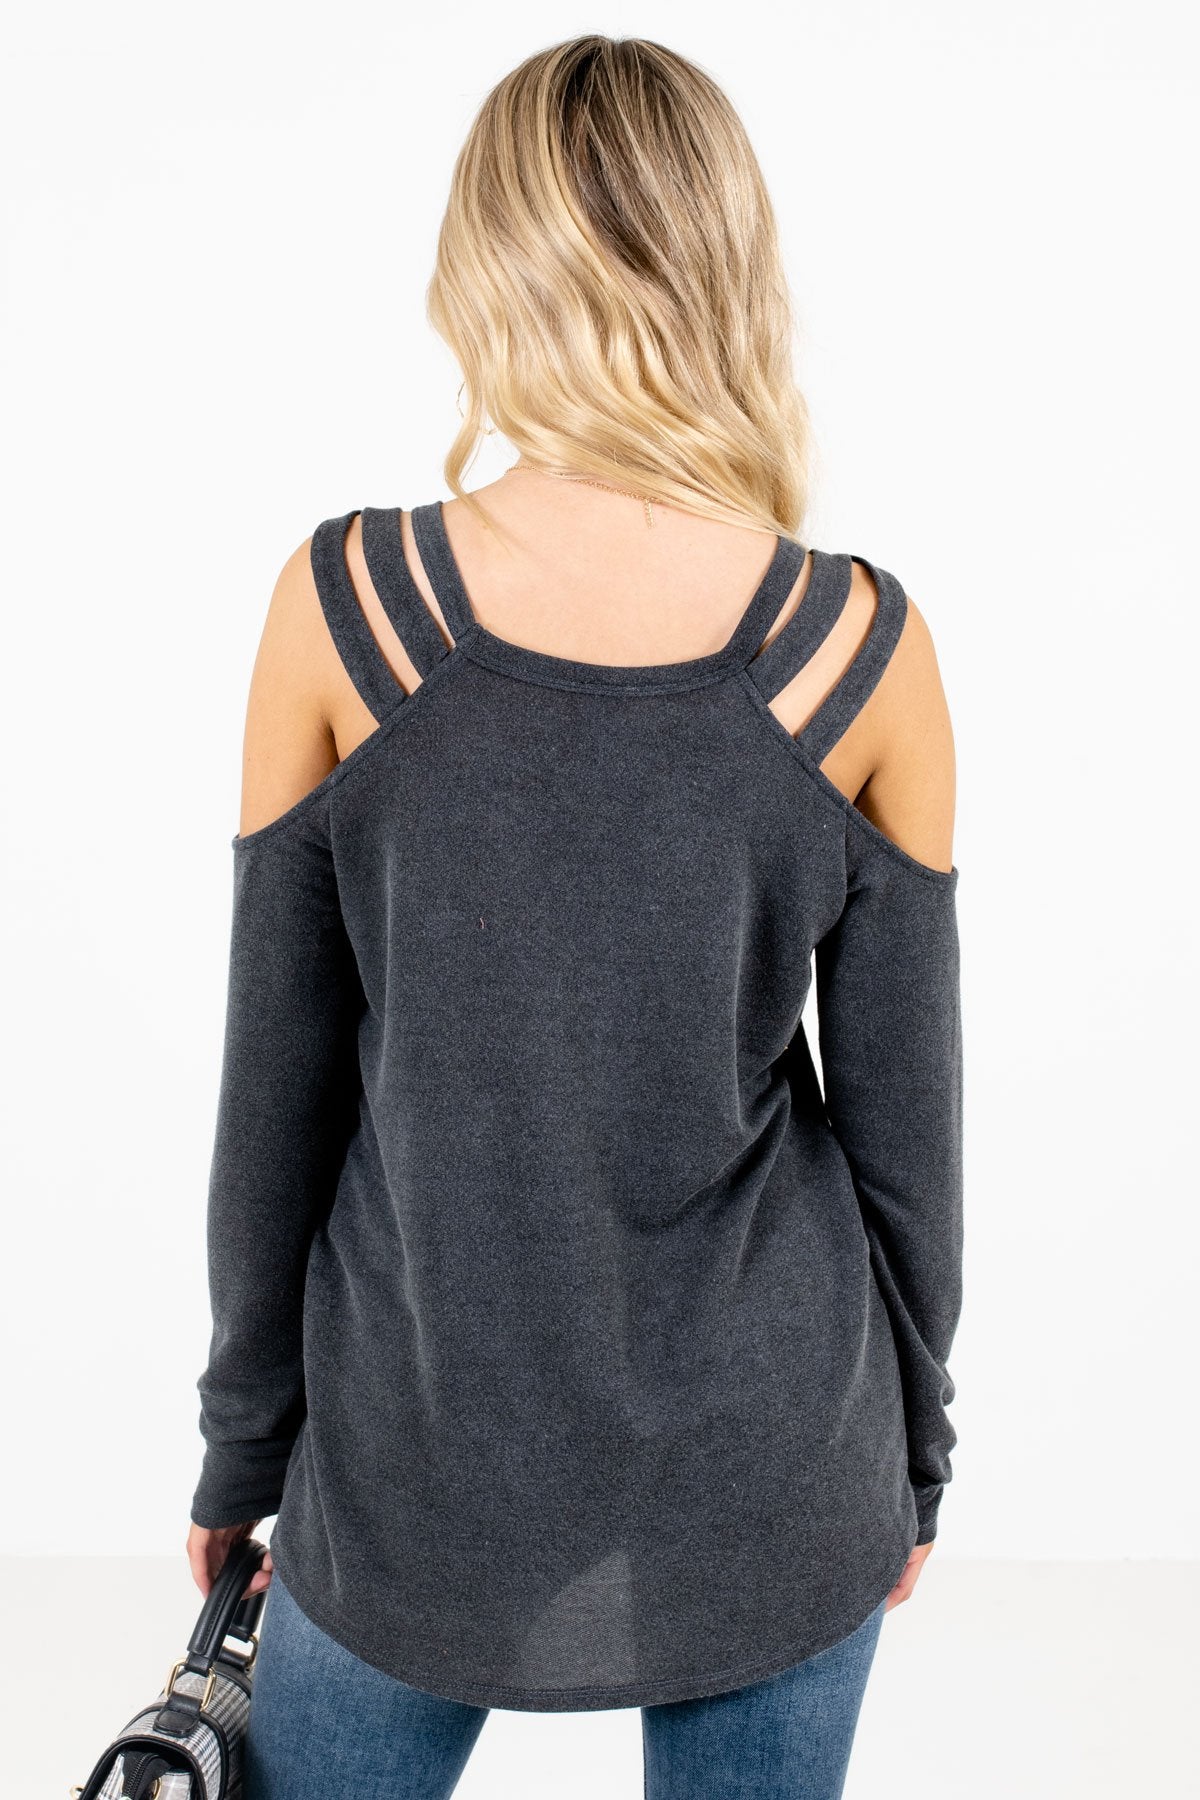 Women’s Charcoal Gray Unique Cutout Detailed Boutique Top